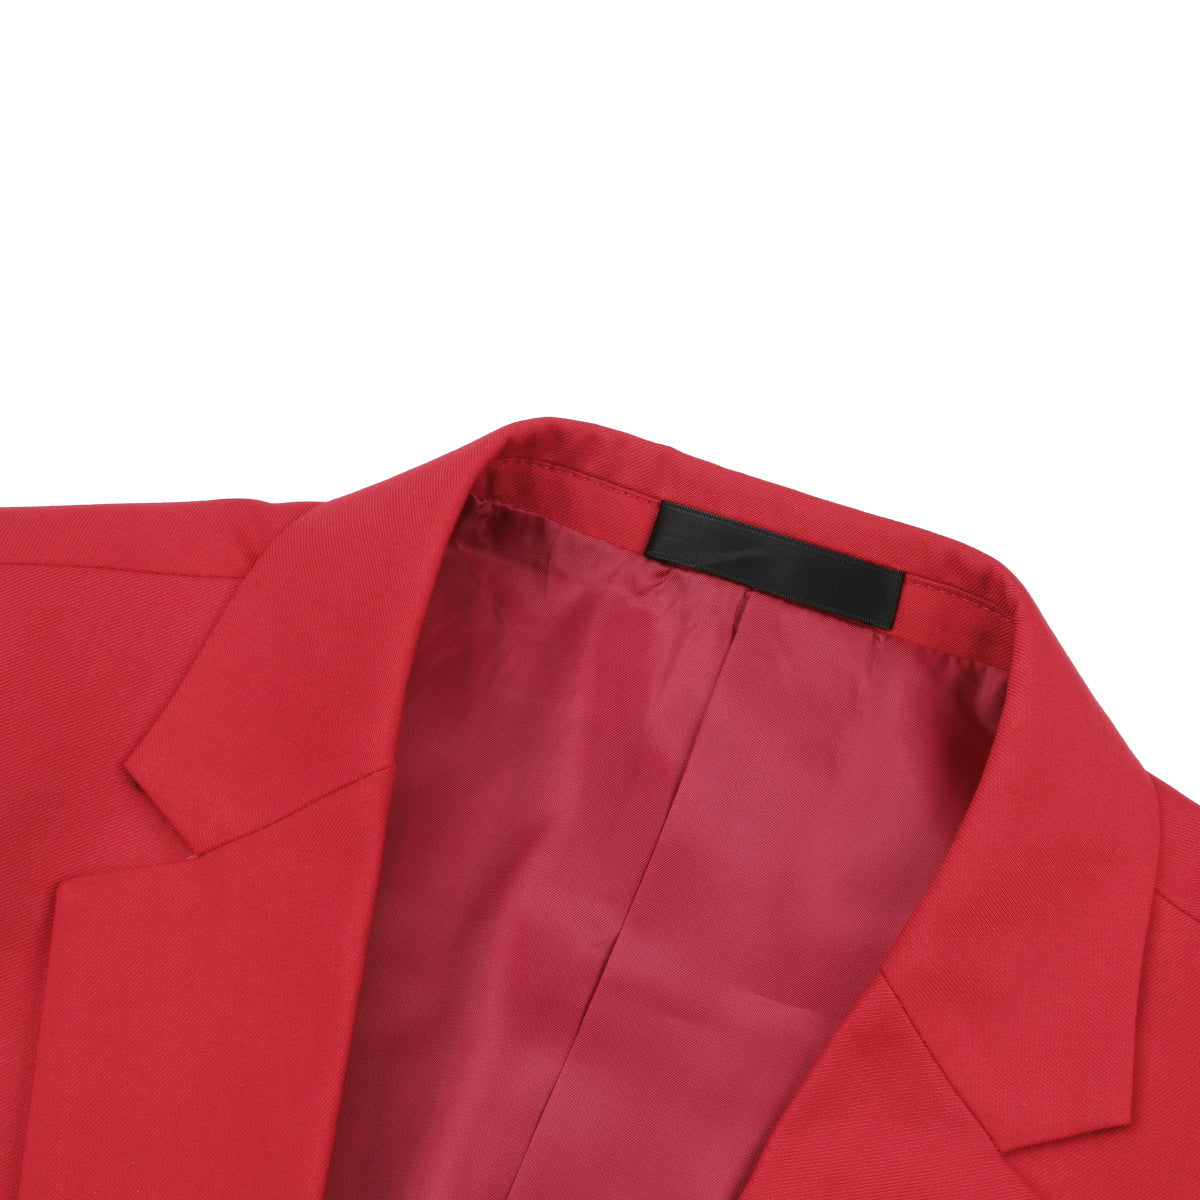 Fashion Jakcket One Button Casual Blazer Red